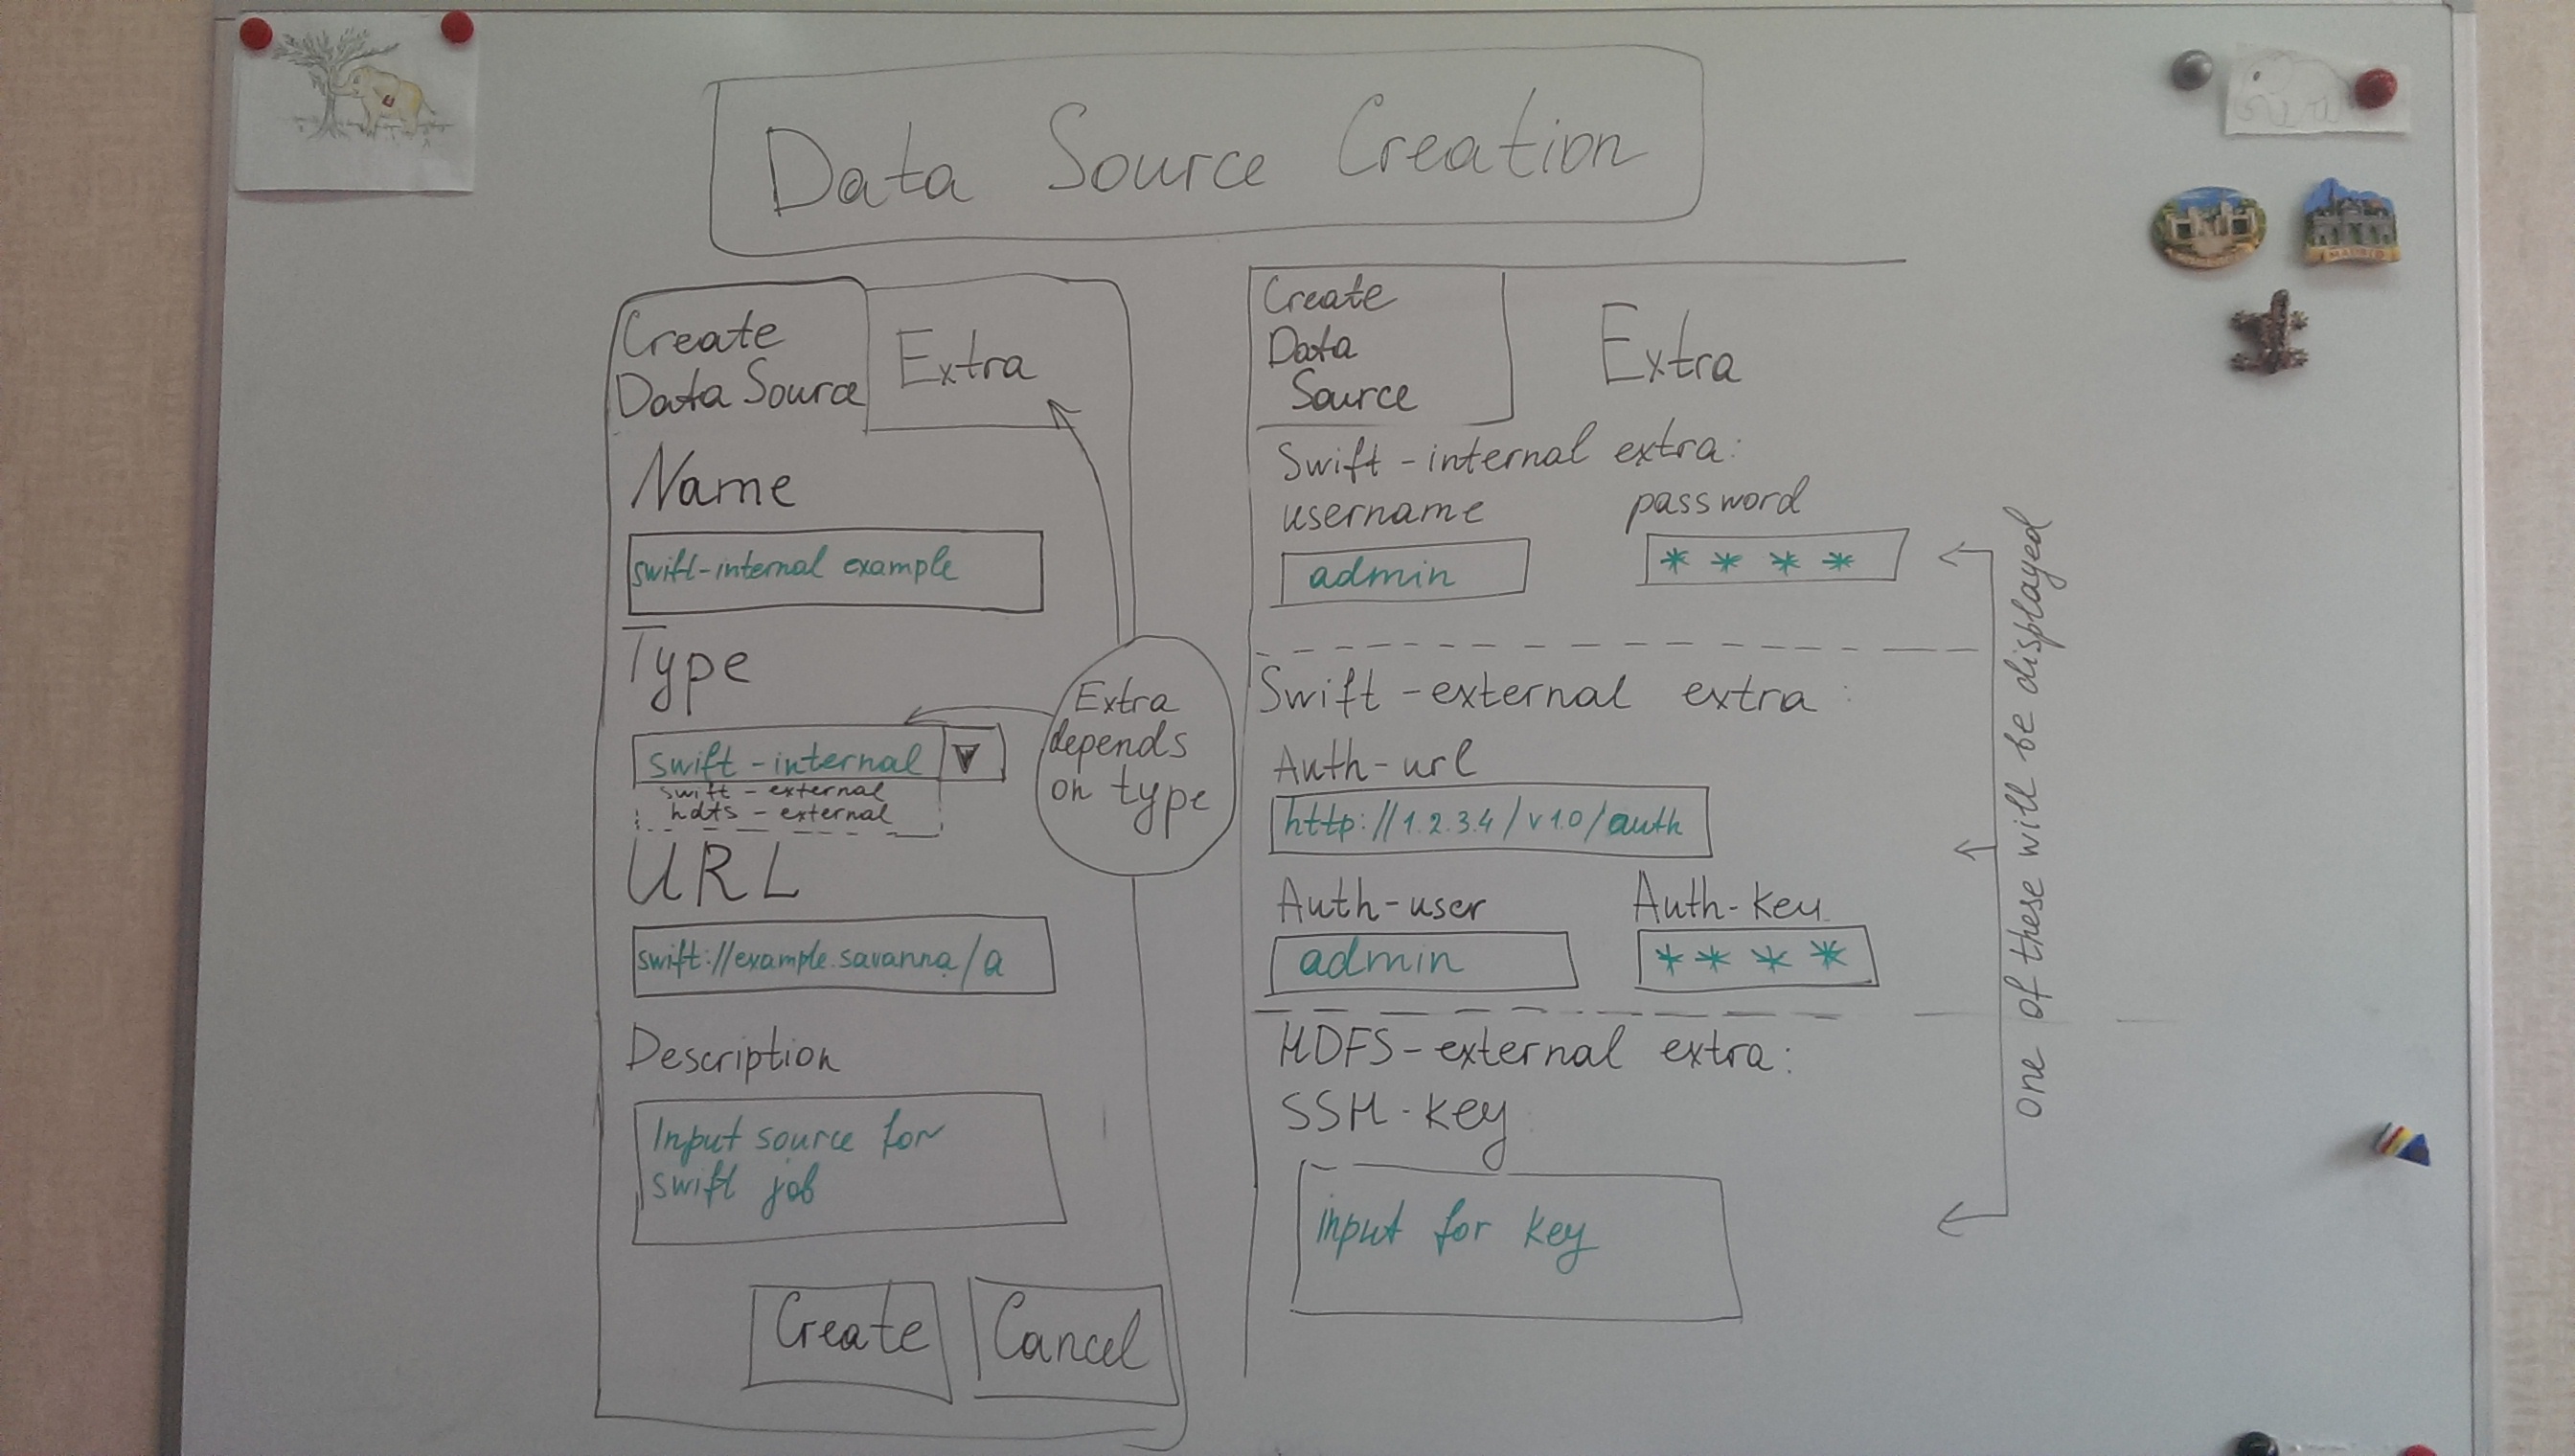 DataSourceCreation.jpg